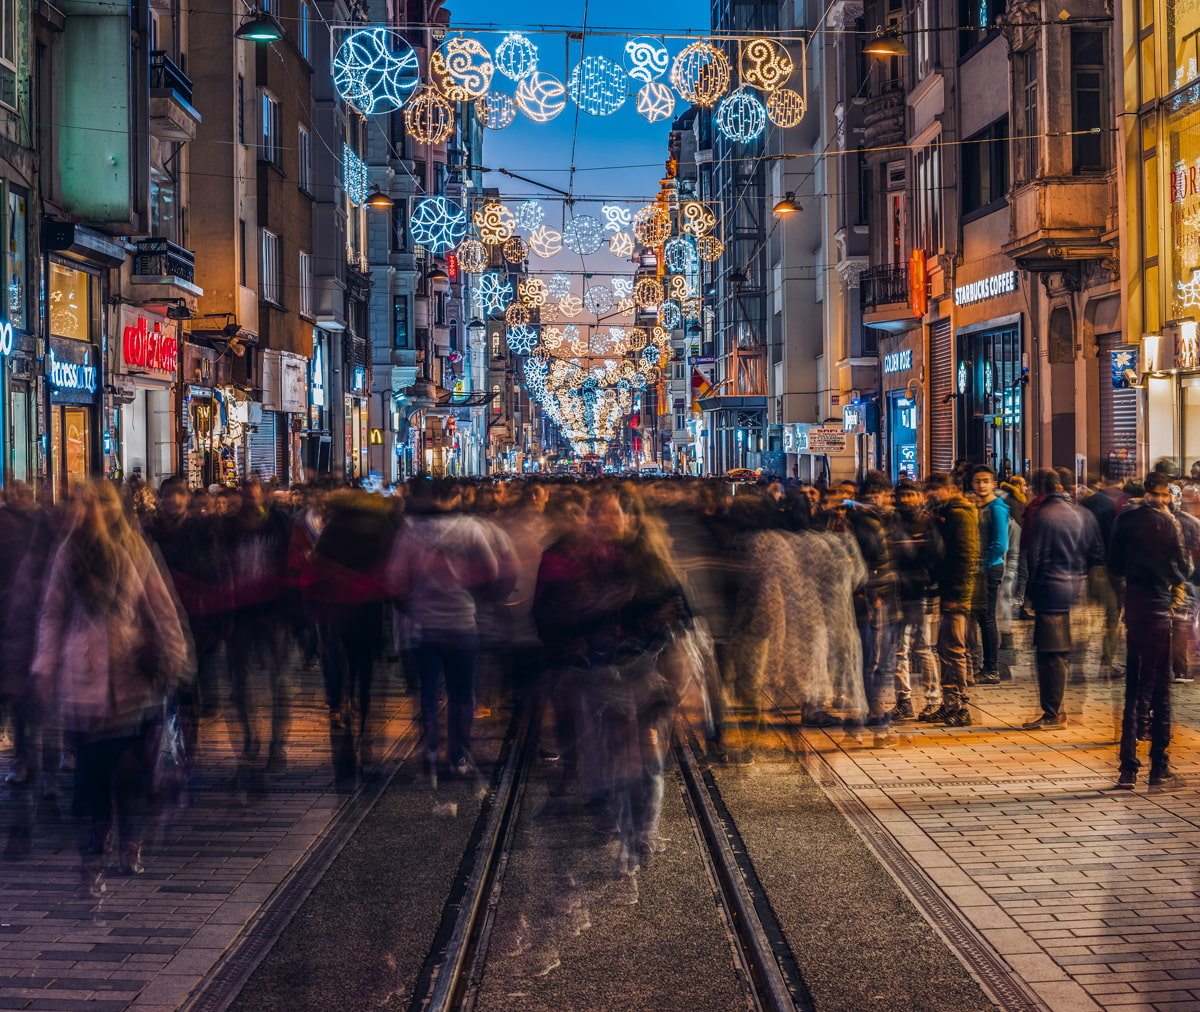 Istanbul in December